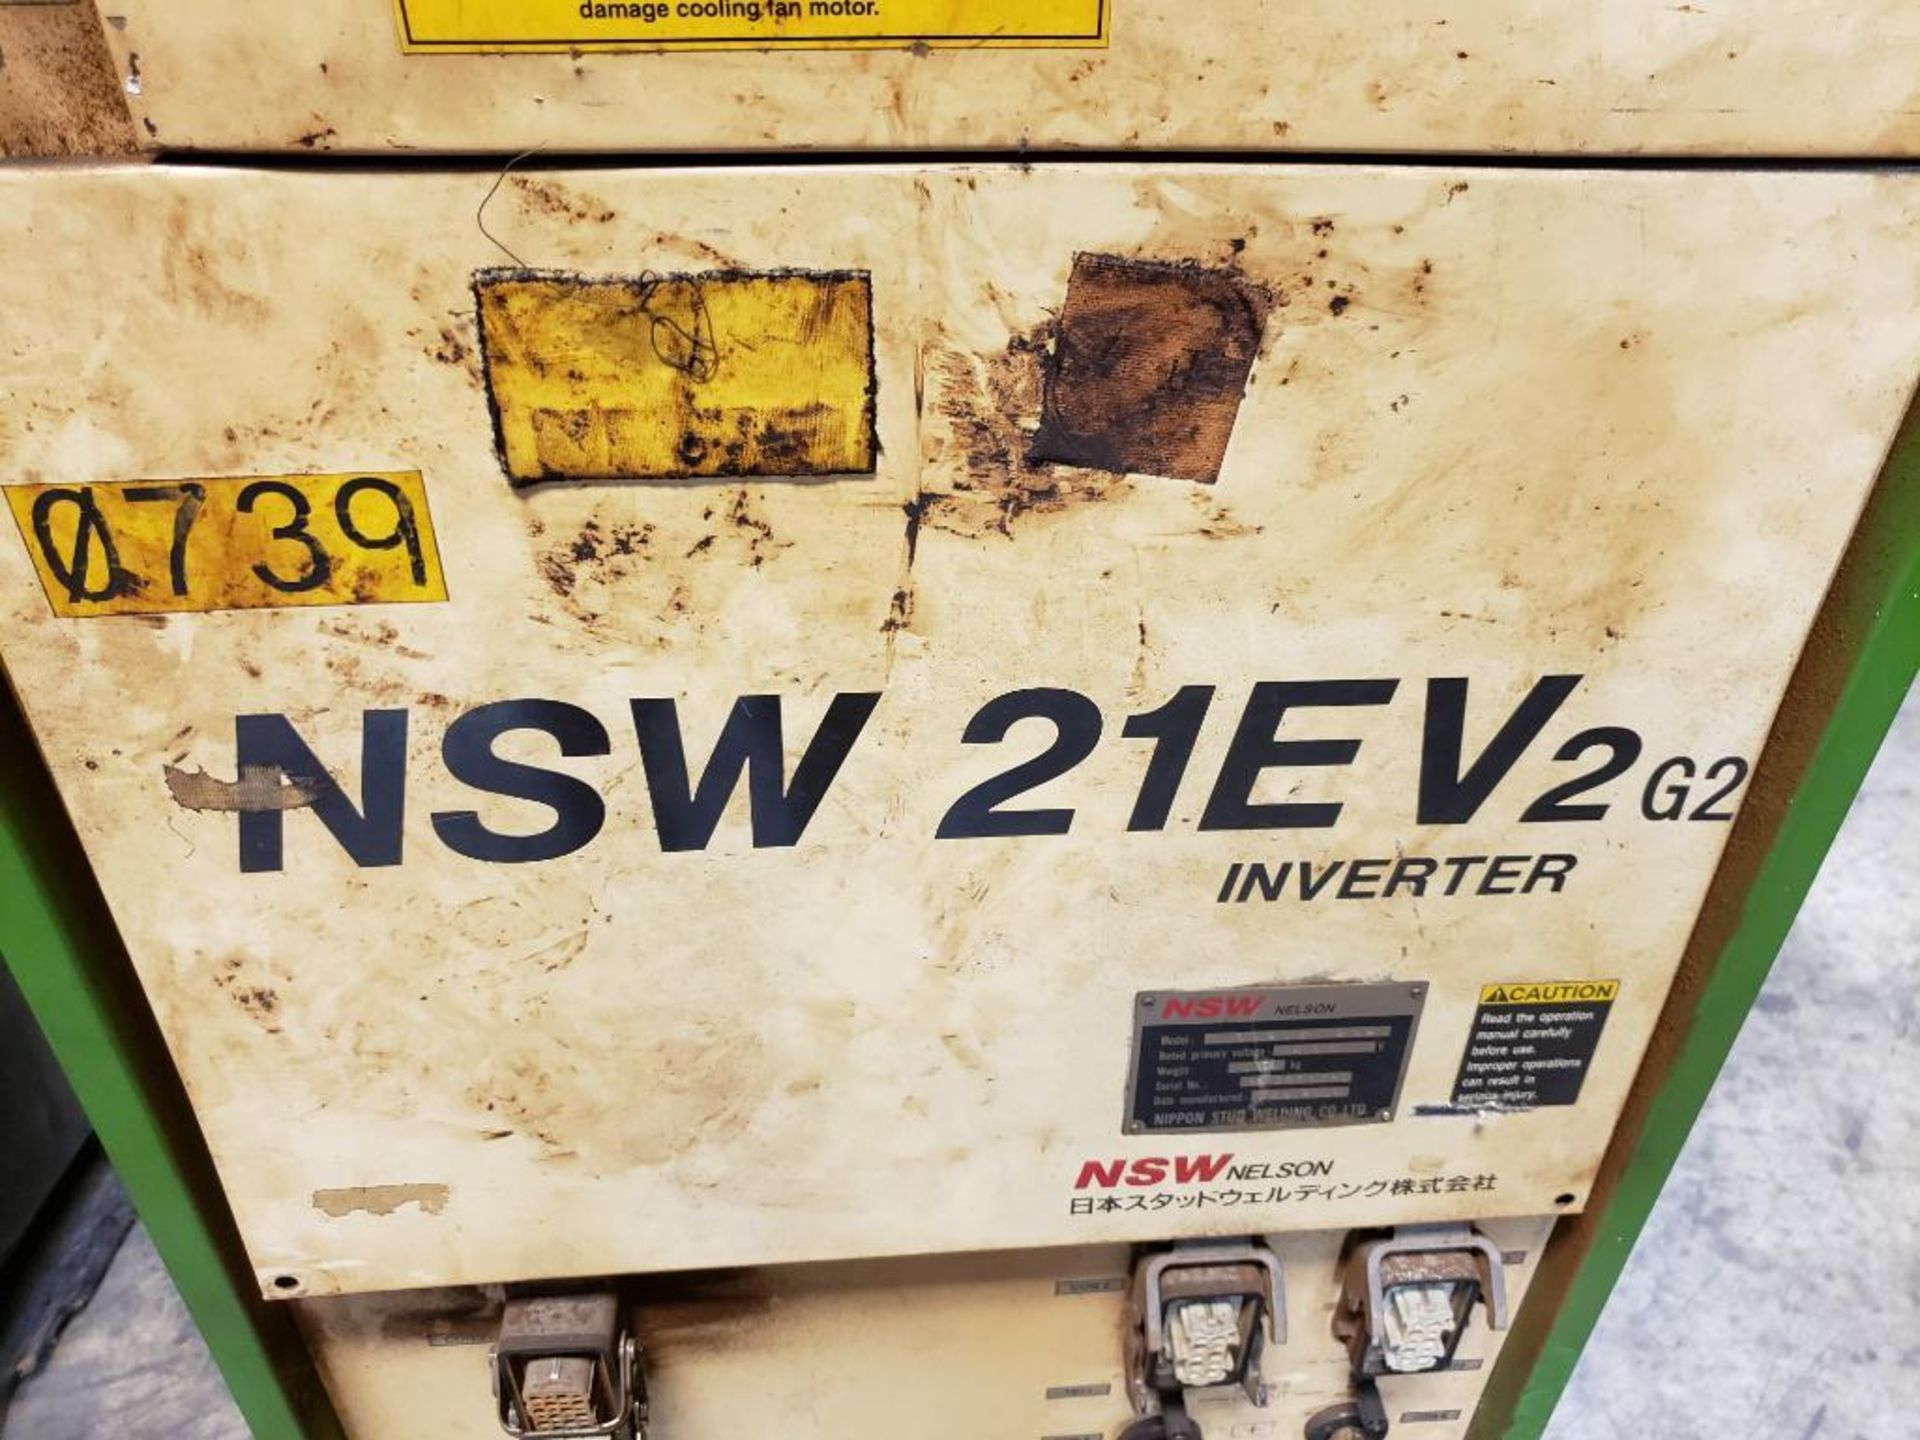 Nelson NSW stud welder controller. Model NSW-21EV2-G2. 3ph 480v. - Image 3 of 12